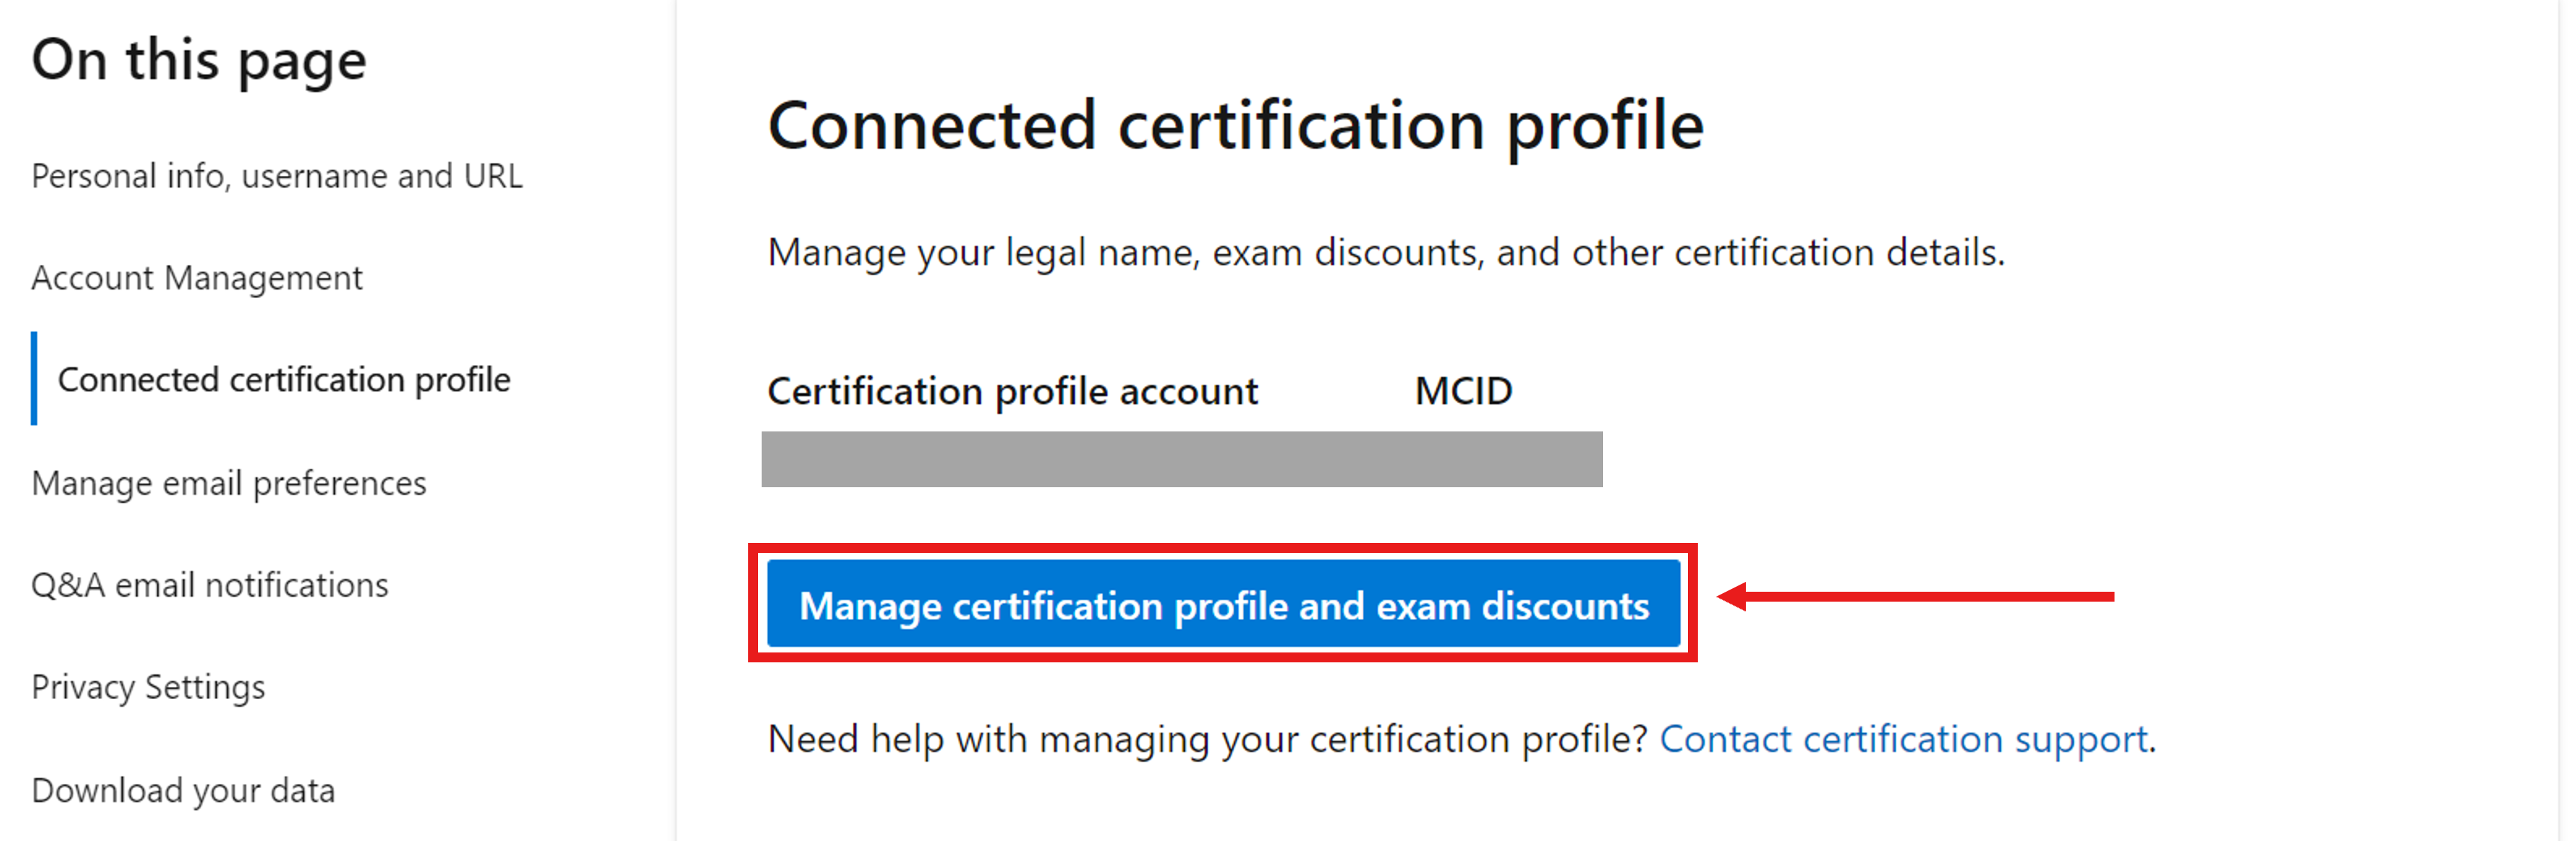 Снимок экрана: раздел профиля сертификации Подключение в параметрах профиля Microsoft Learn.